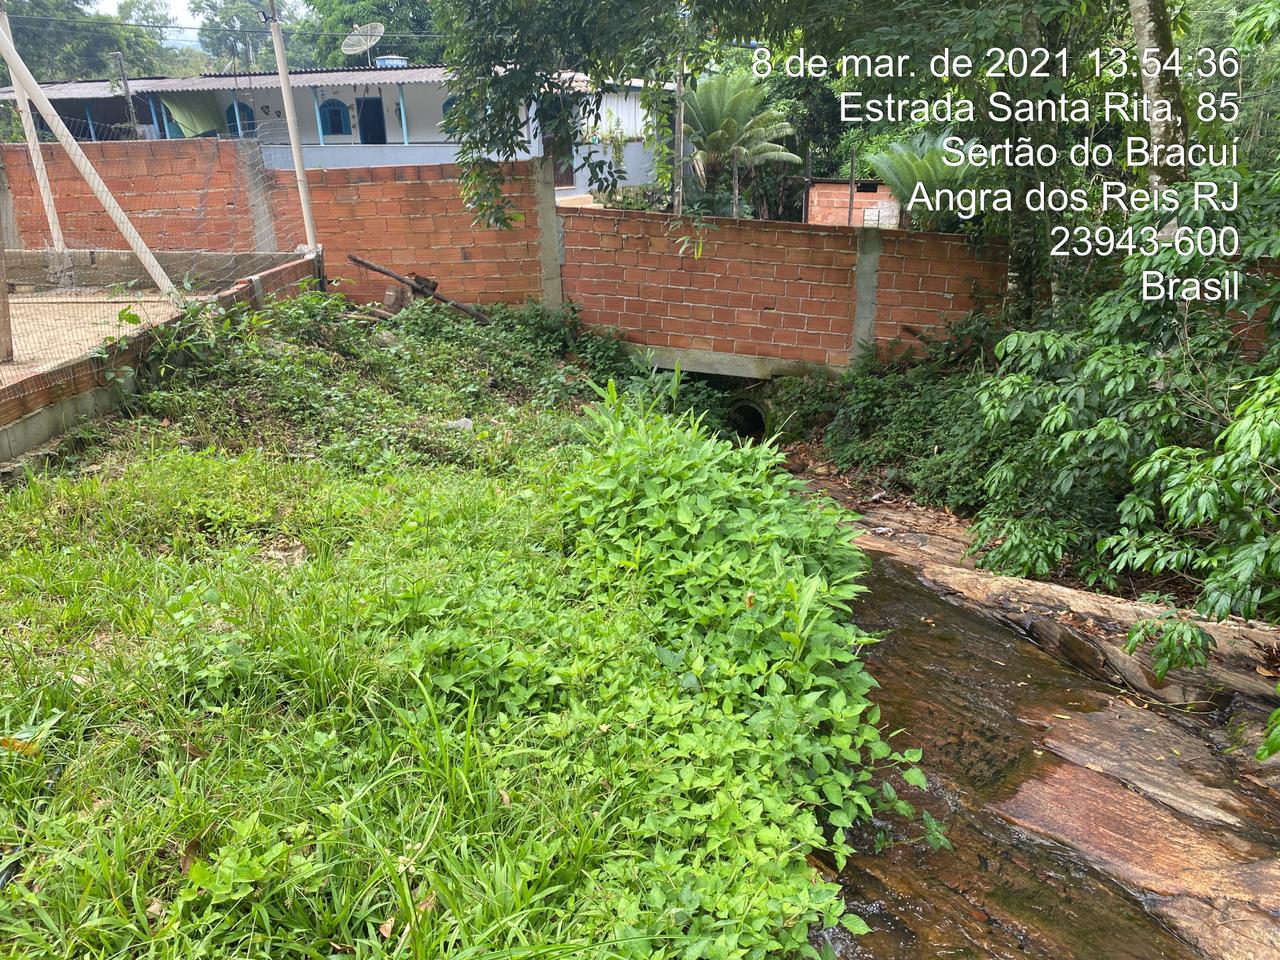 Obras denunciadas ao Linha Verde no interior de sítio no Bracuí leva polícia militar a constatar crimes ambientais em Angra dos Reis